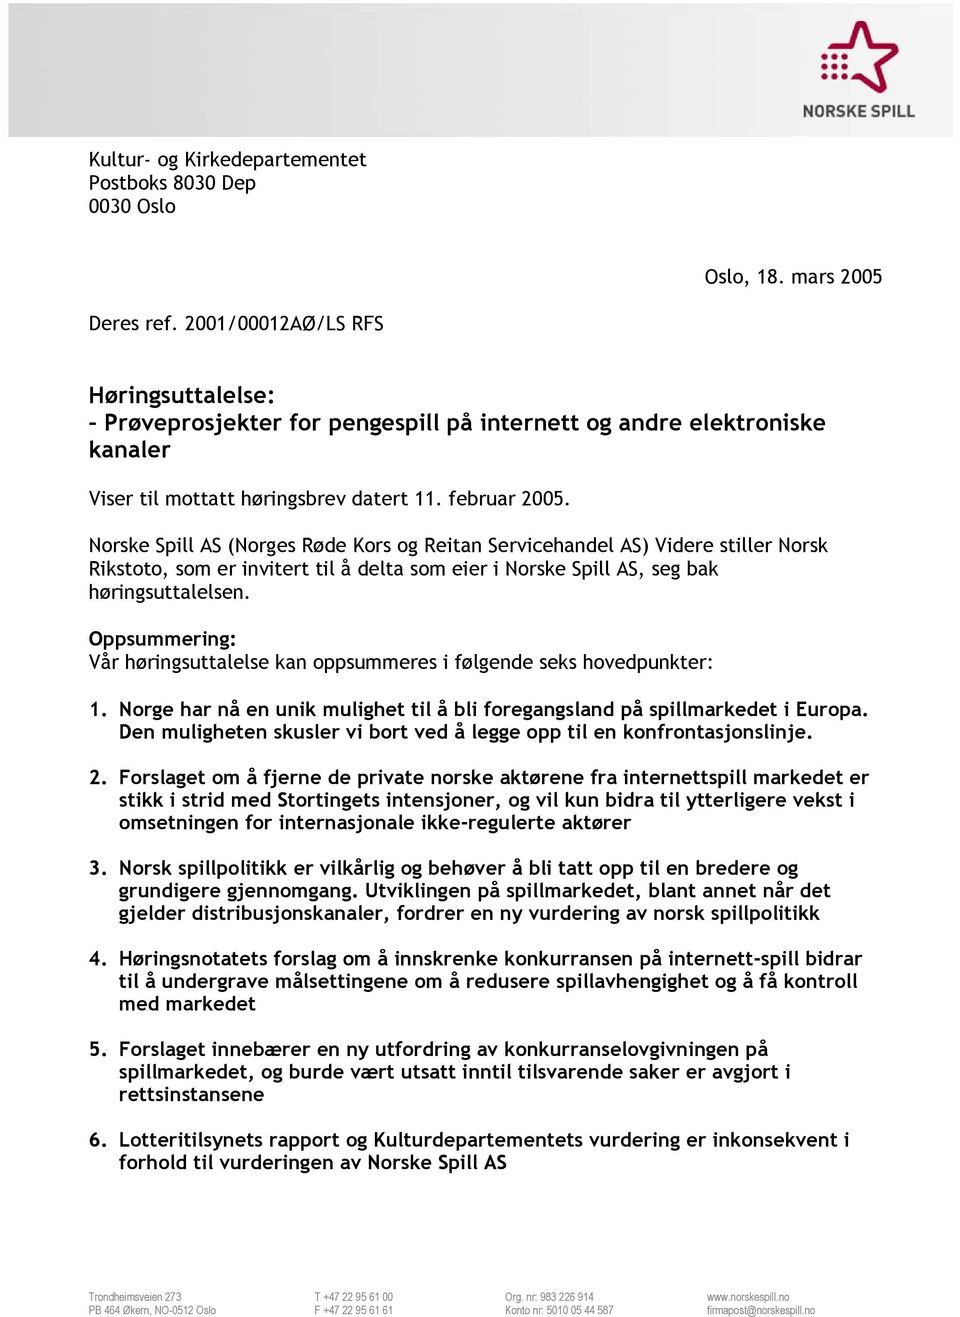 Norske Spill AS (Norges Røde Kors og Reitan Servicehandel AS) Videre stiller Norsk Rikstoto, som er invitert til å delta som eier i Norske Spill AS, seg bak høringsuttalelsen.